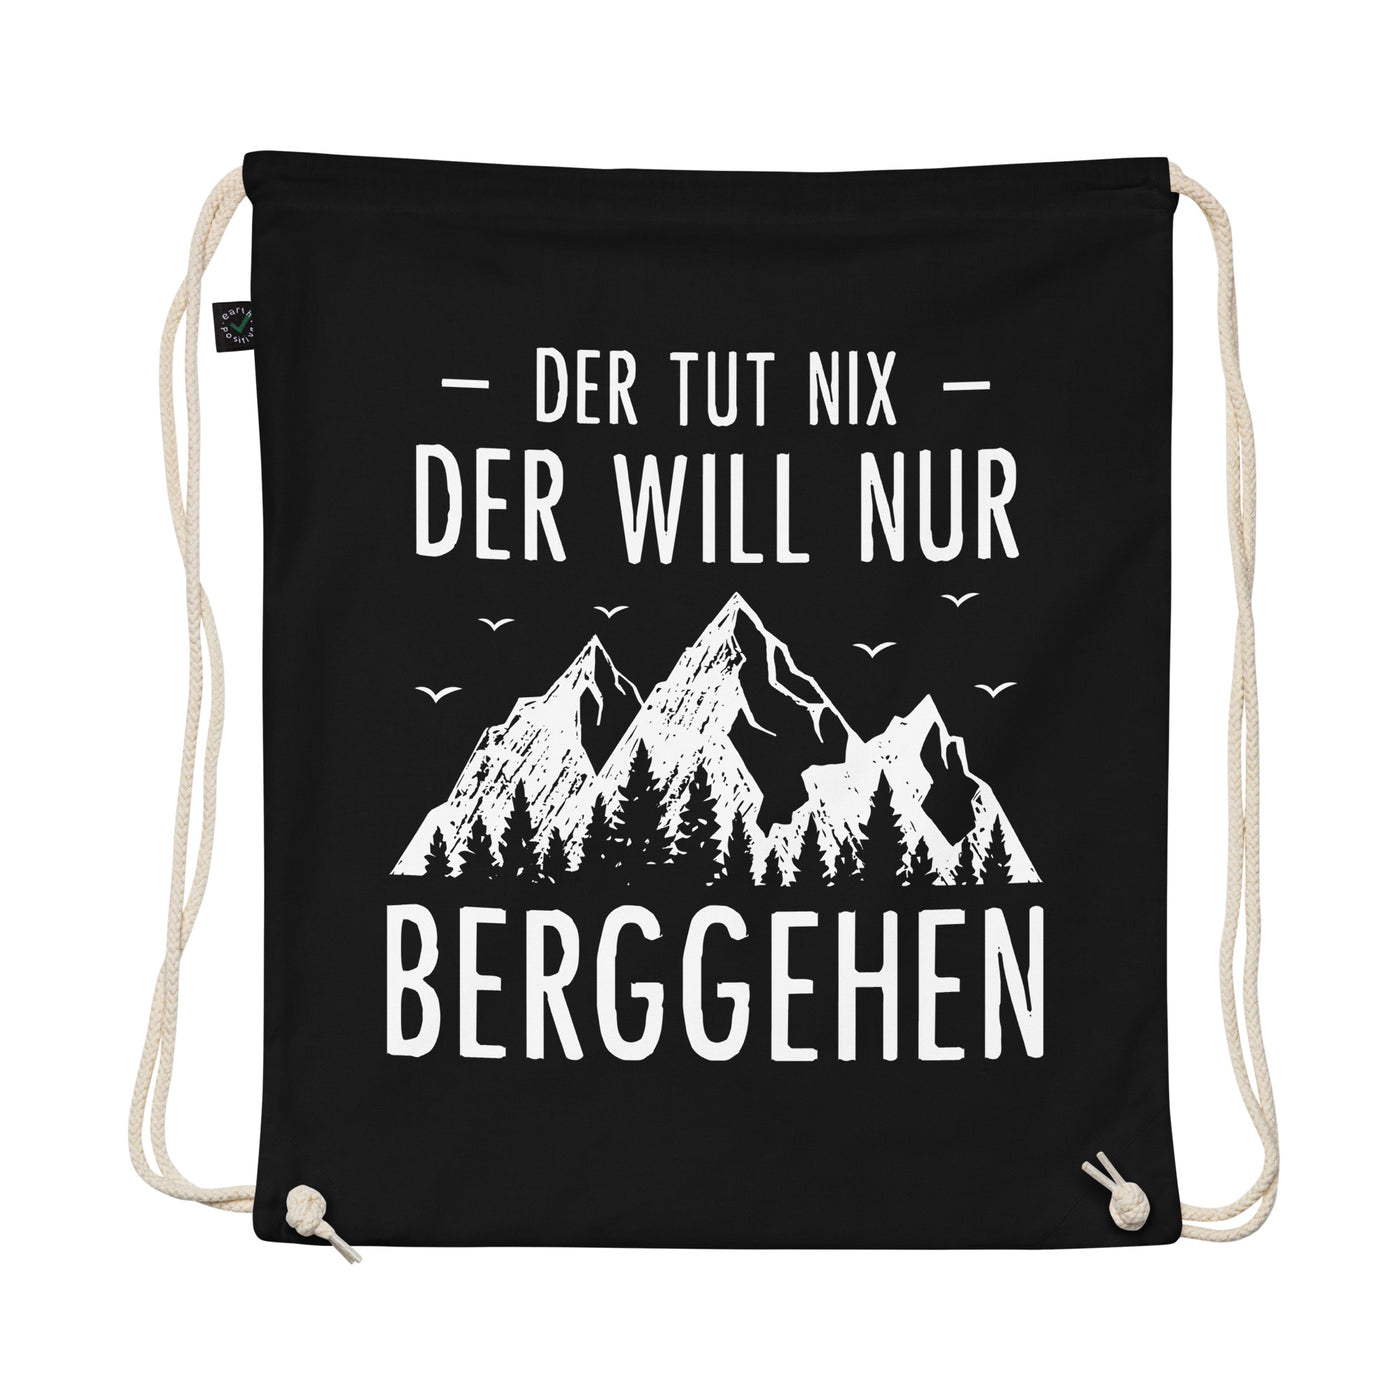 Der Tut Nix Der Will Nur Berggehen - Organic Turnbeutel berge